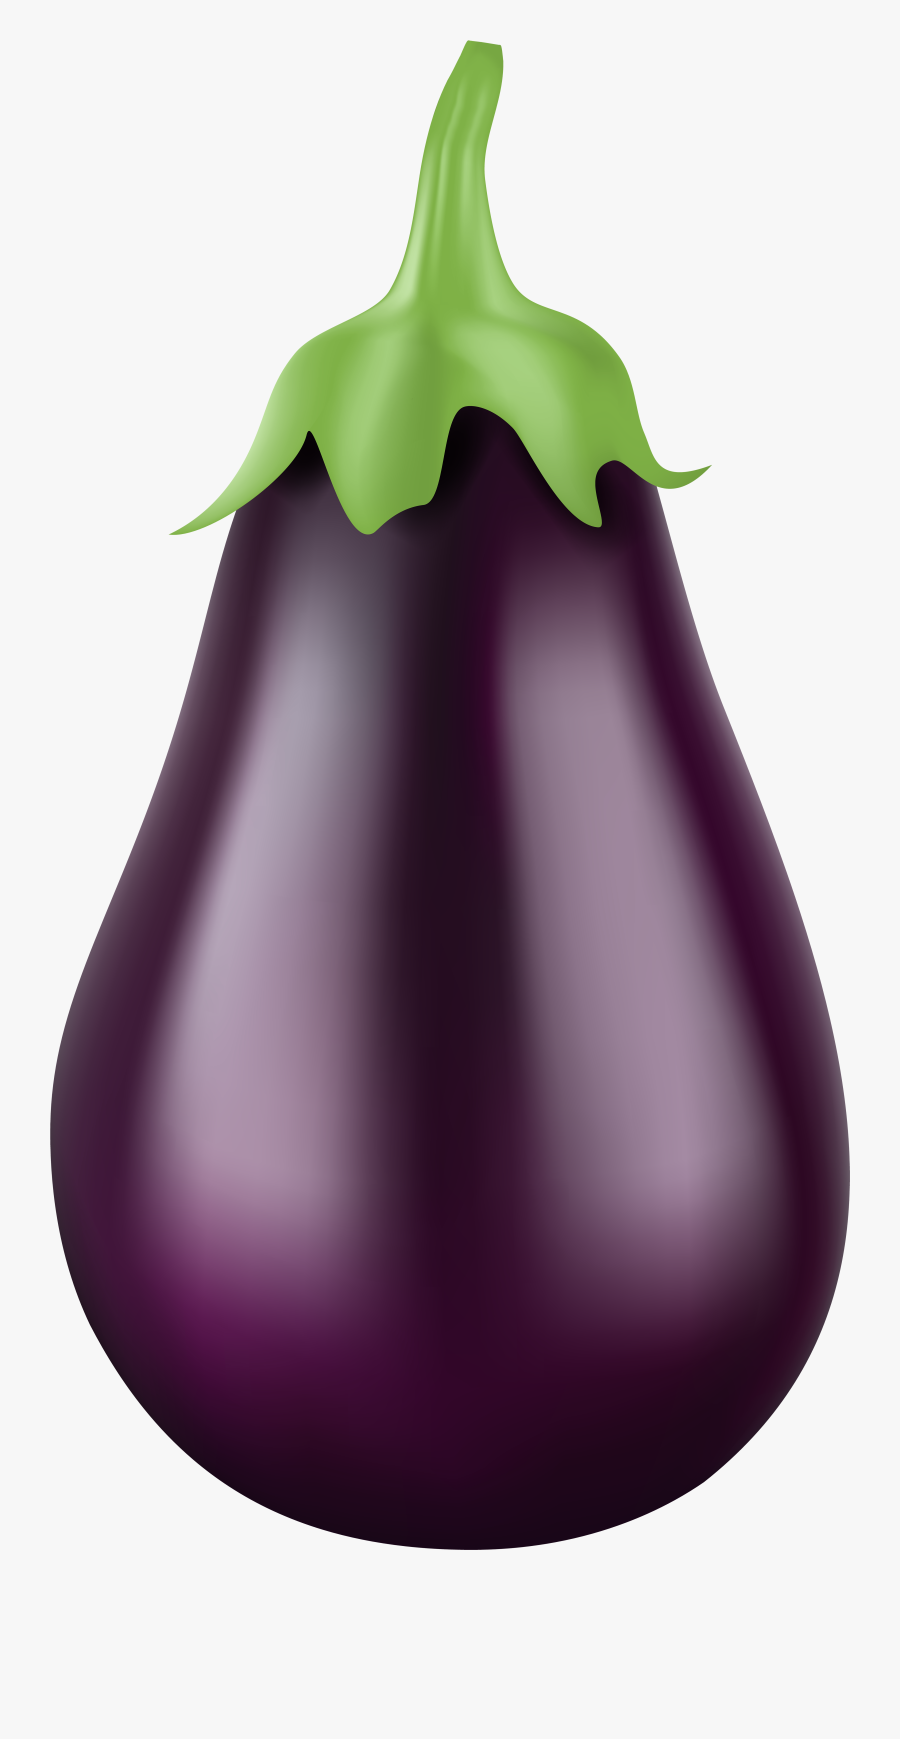 Eggplant Clipart Happy - Eggplant Png, Transparent Clipart